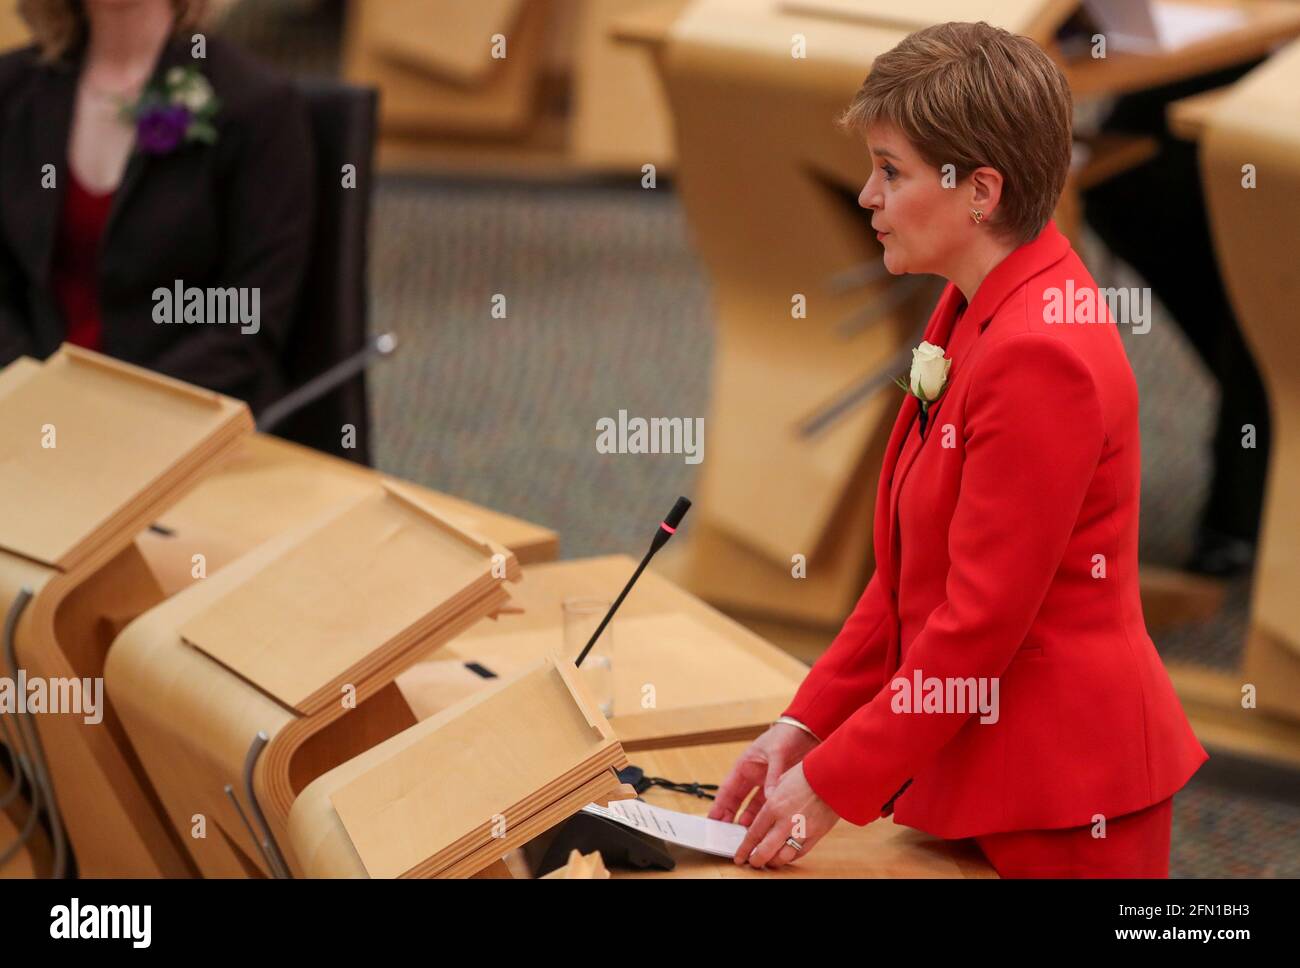 Il primo ministro della Scozia e il leader della SNP Nicola Sturgeon si sono affermati al Parlamento scozzese di Edimburgo dopo le ultime elezioni di weekÕs Holyrood. Data immagine: Giovedì 13 maggio 2021. Foto Stock